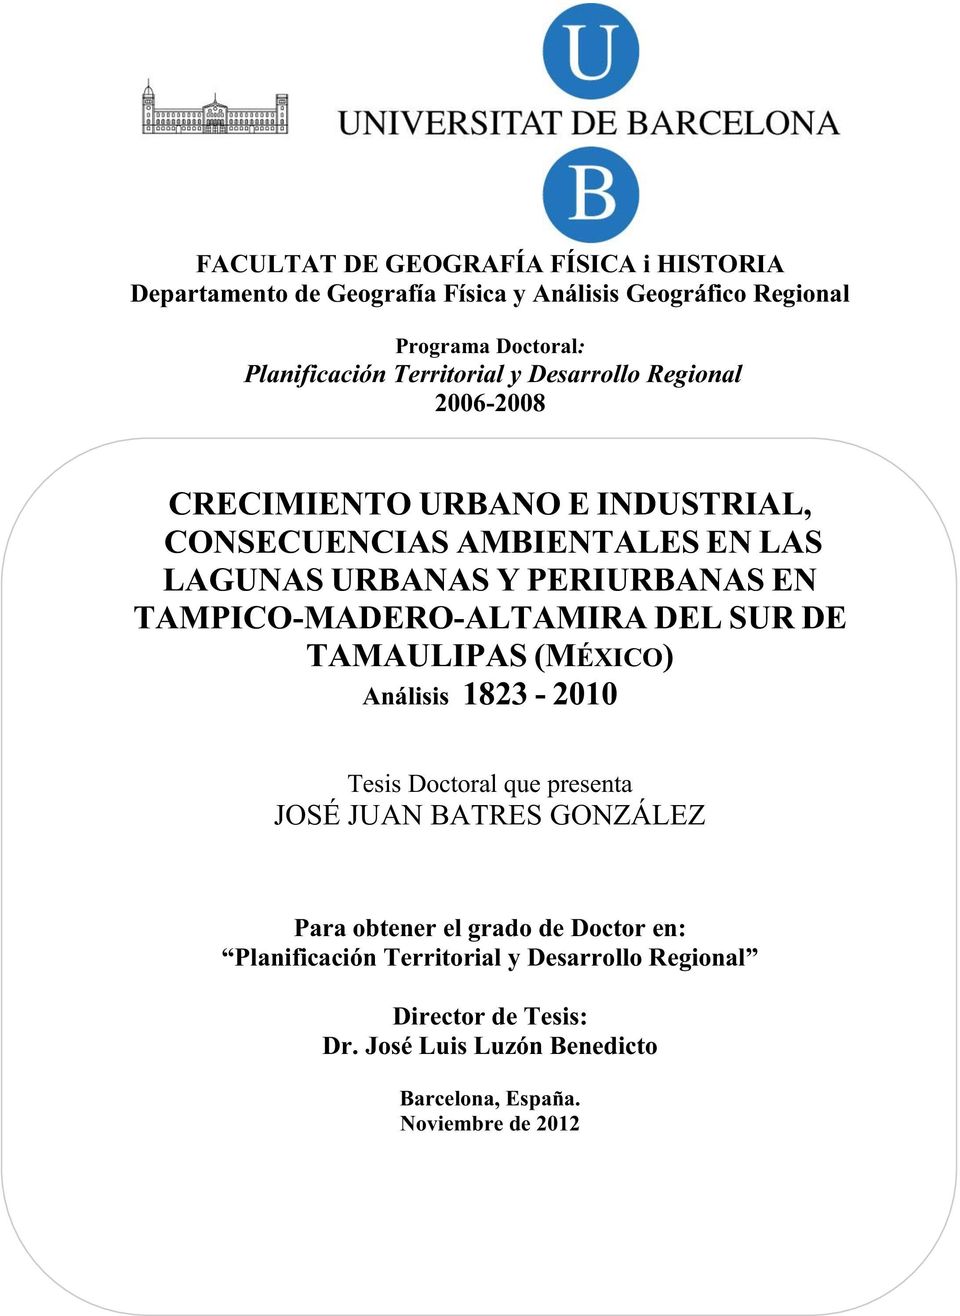 TAMPICO-MADERO-ALTAMIRA DEL SUR DE TAMAULIPAS (MÉXICO) Análisis 1823-2010 Tesis Doctoral que presenta JOSÉ JUAN BATRES GONZÁLEZ Para obtener el